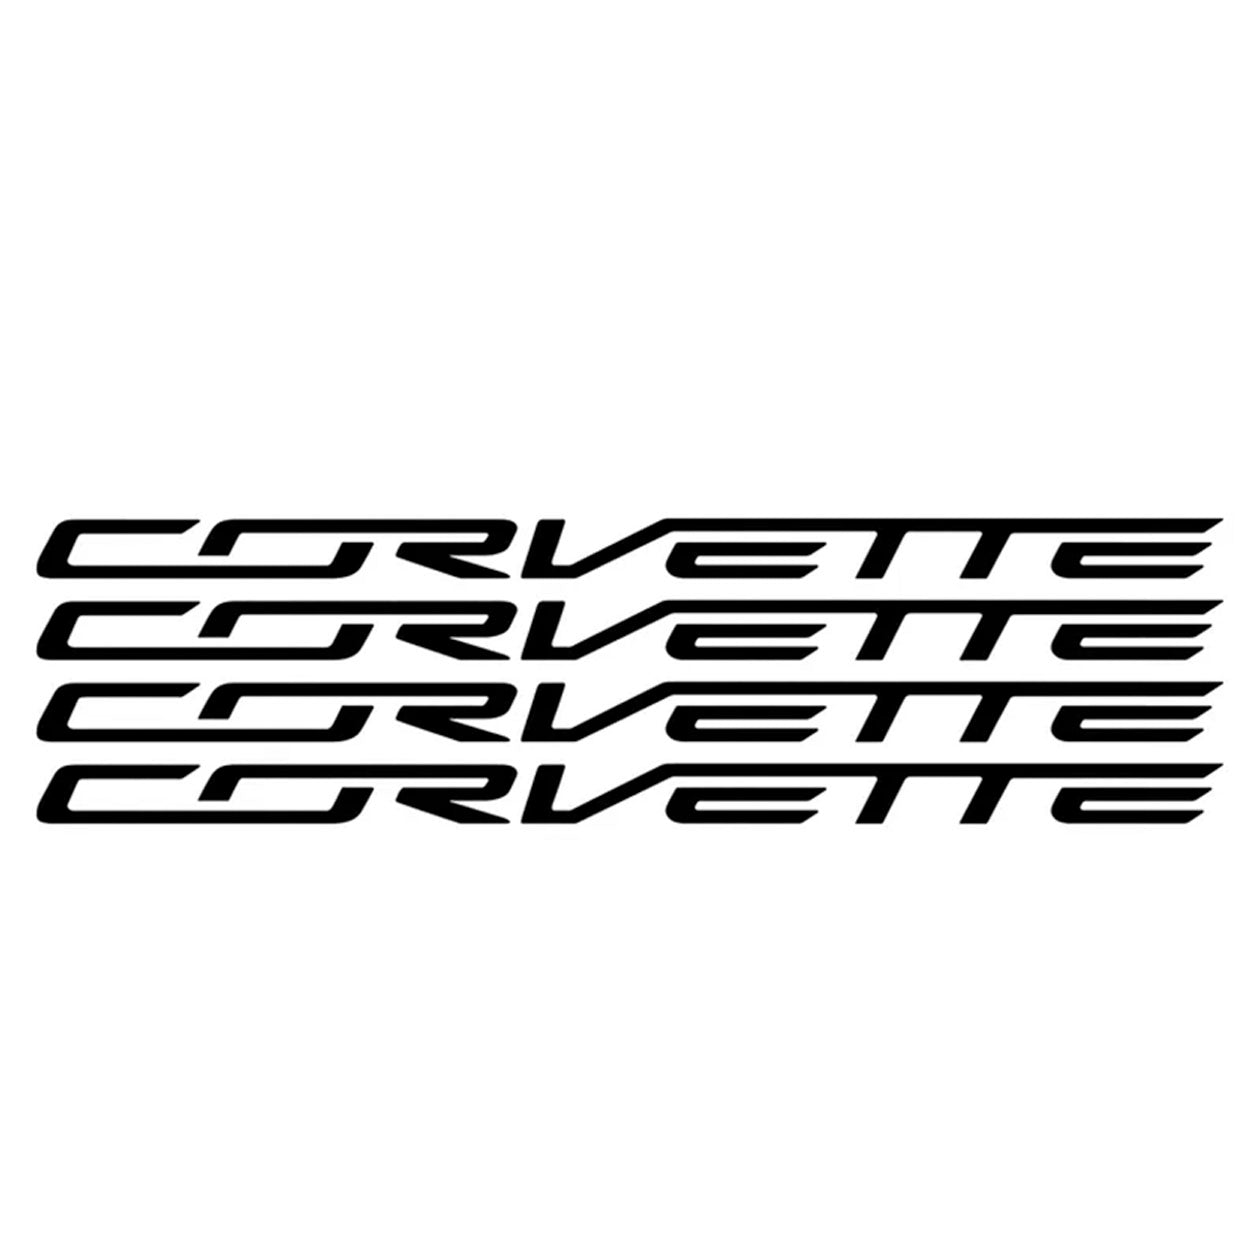 C6/C7 Wheel Lettering Kit - Corvette Script for 4 Wheels